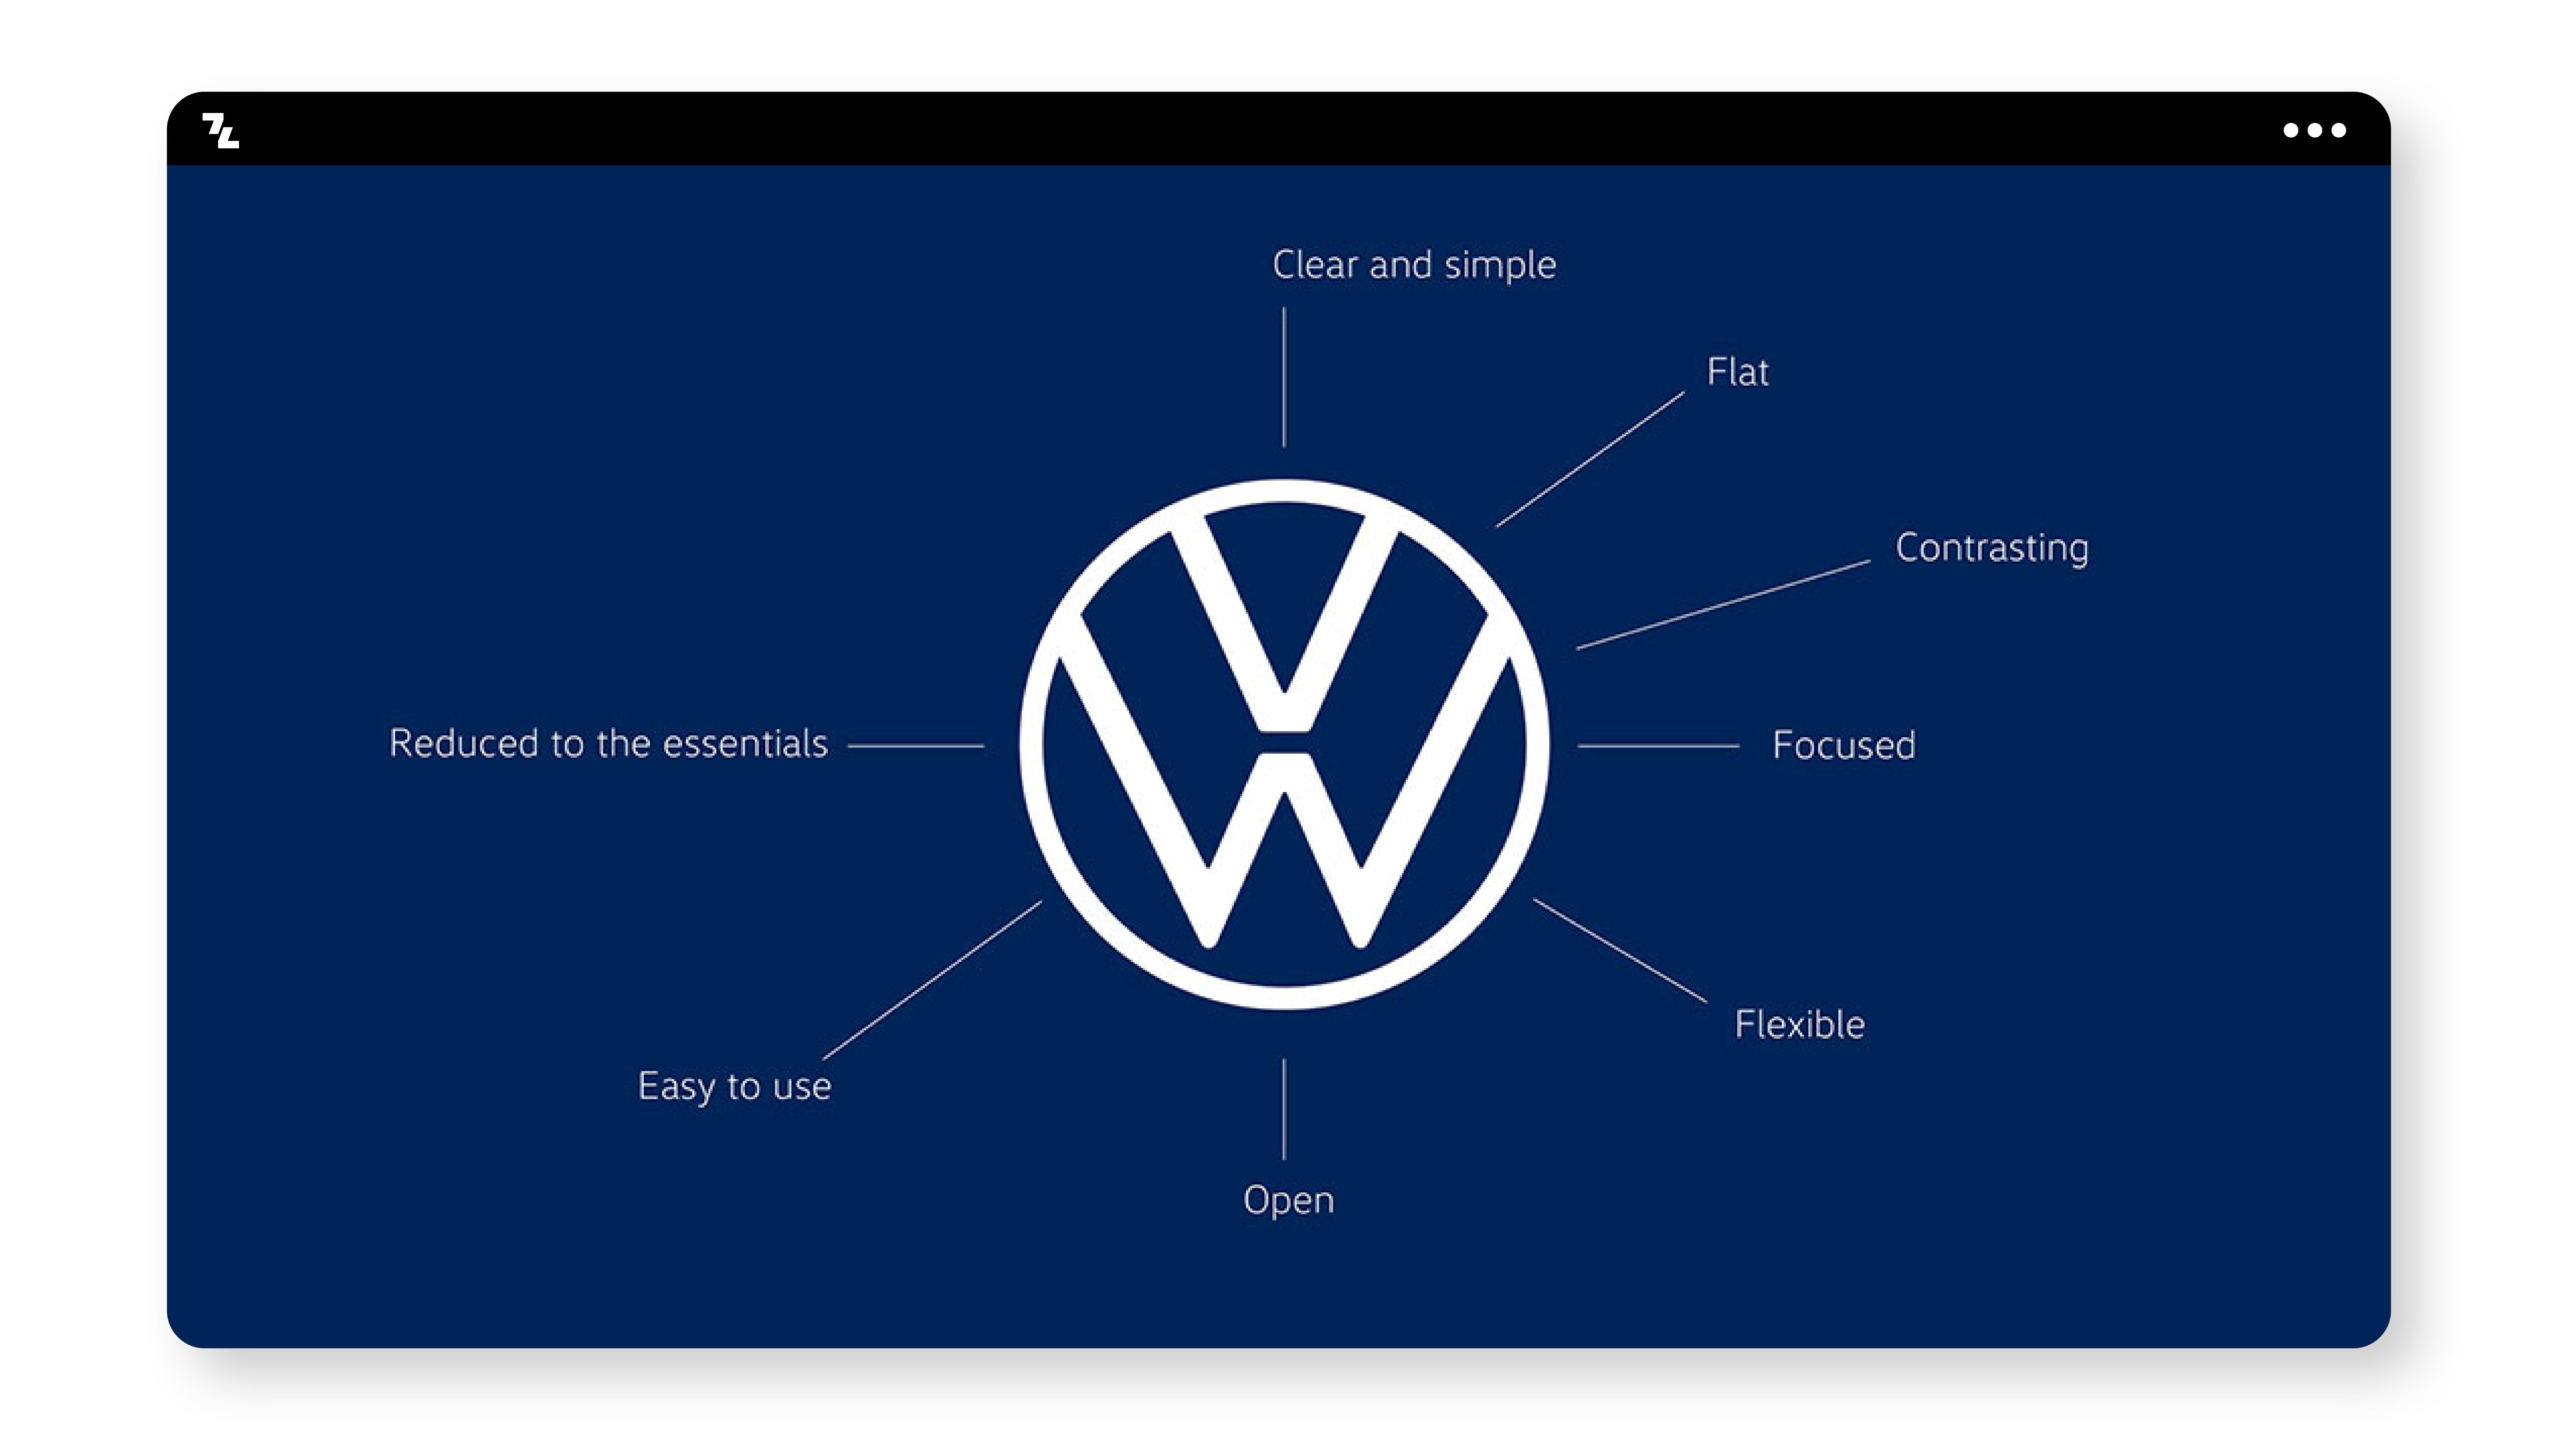 Das Volkswagen-Logo auf blauem Hintergrund.